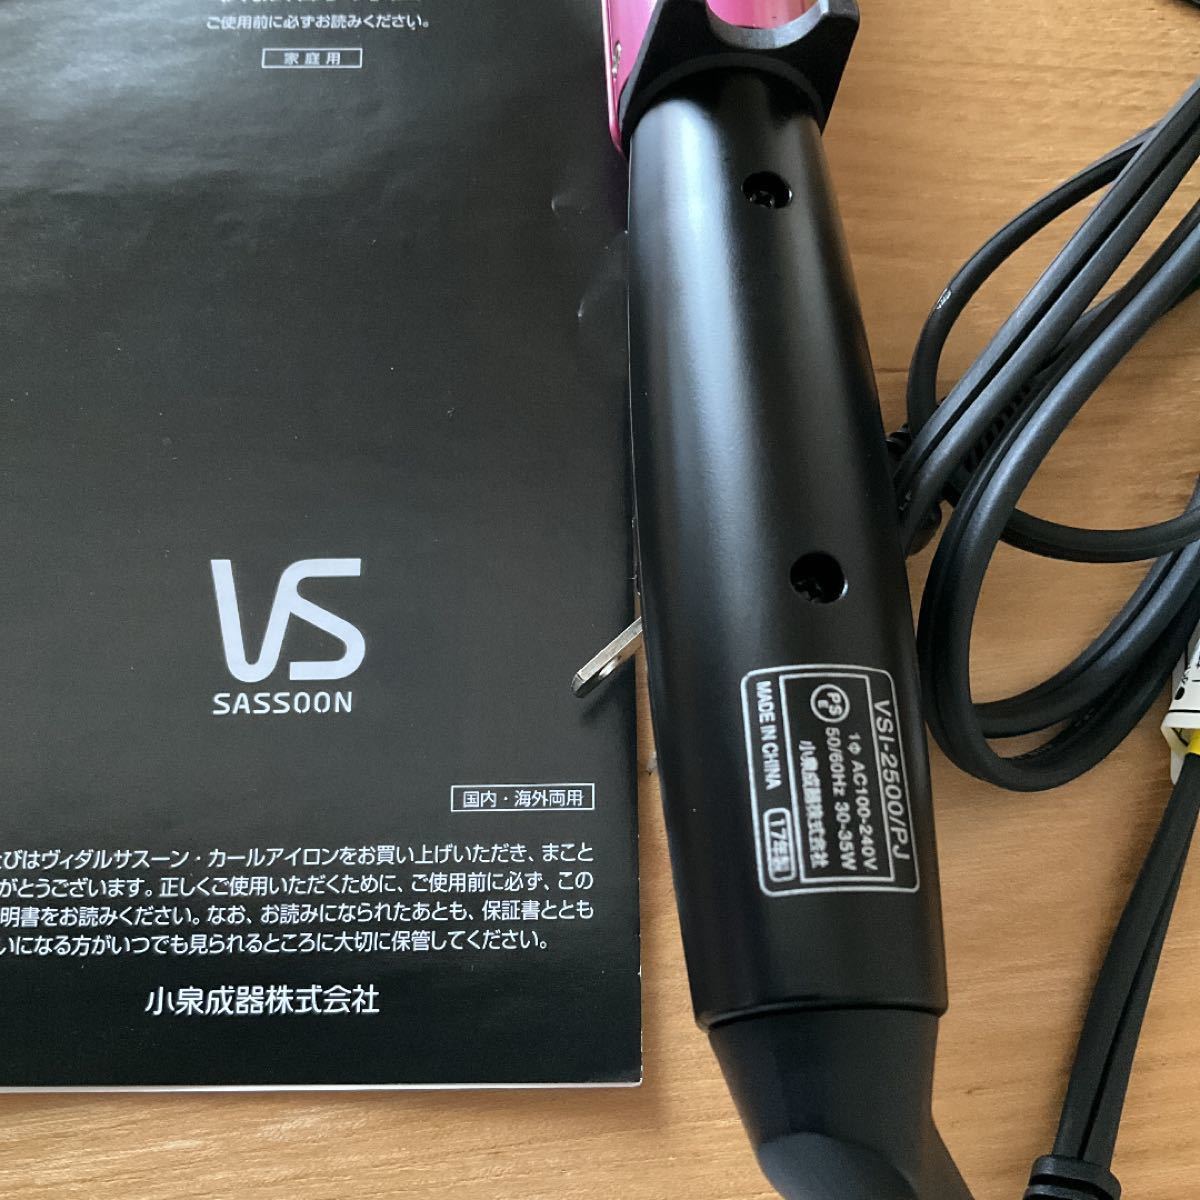 【美品】VS SASSOON ヘアアイロン ピンク シリーズ VSI-2500/PJ 25.0mm 国内海外両用